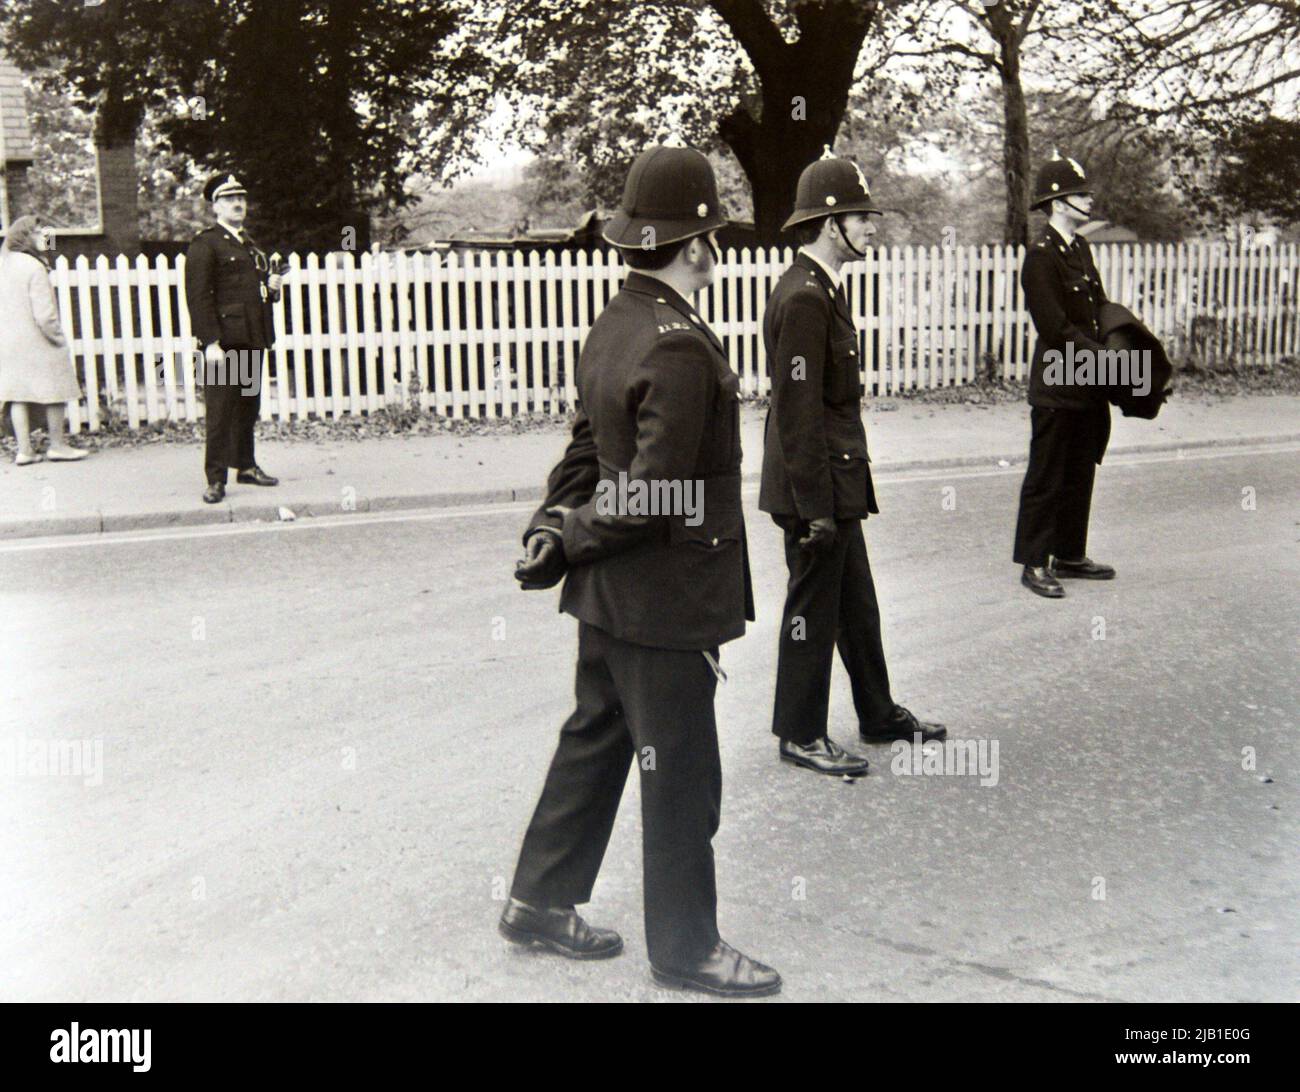 Les policiers qui font la police d'une manifestation contre le racisme défilant à Leicester, Angleterre, Royaume-Uni, Îles britanniques, en 1972. Un officier supérieur se tient sur le trottoir pour superviser. Banque D'Images